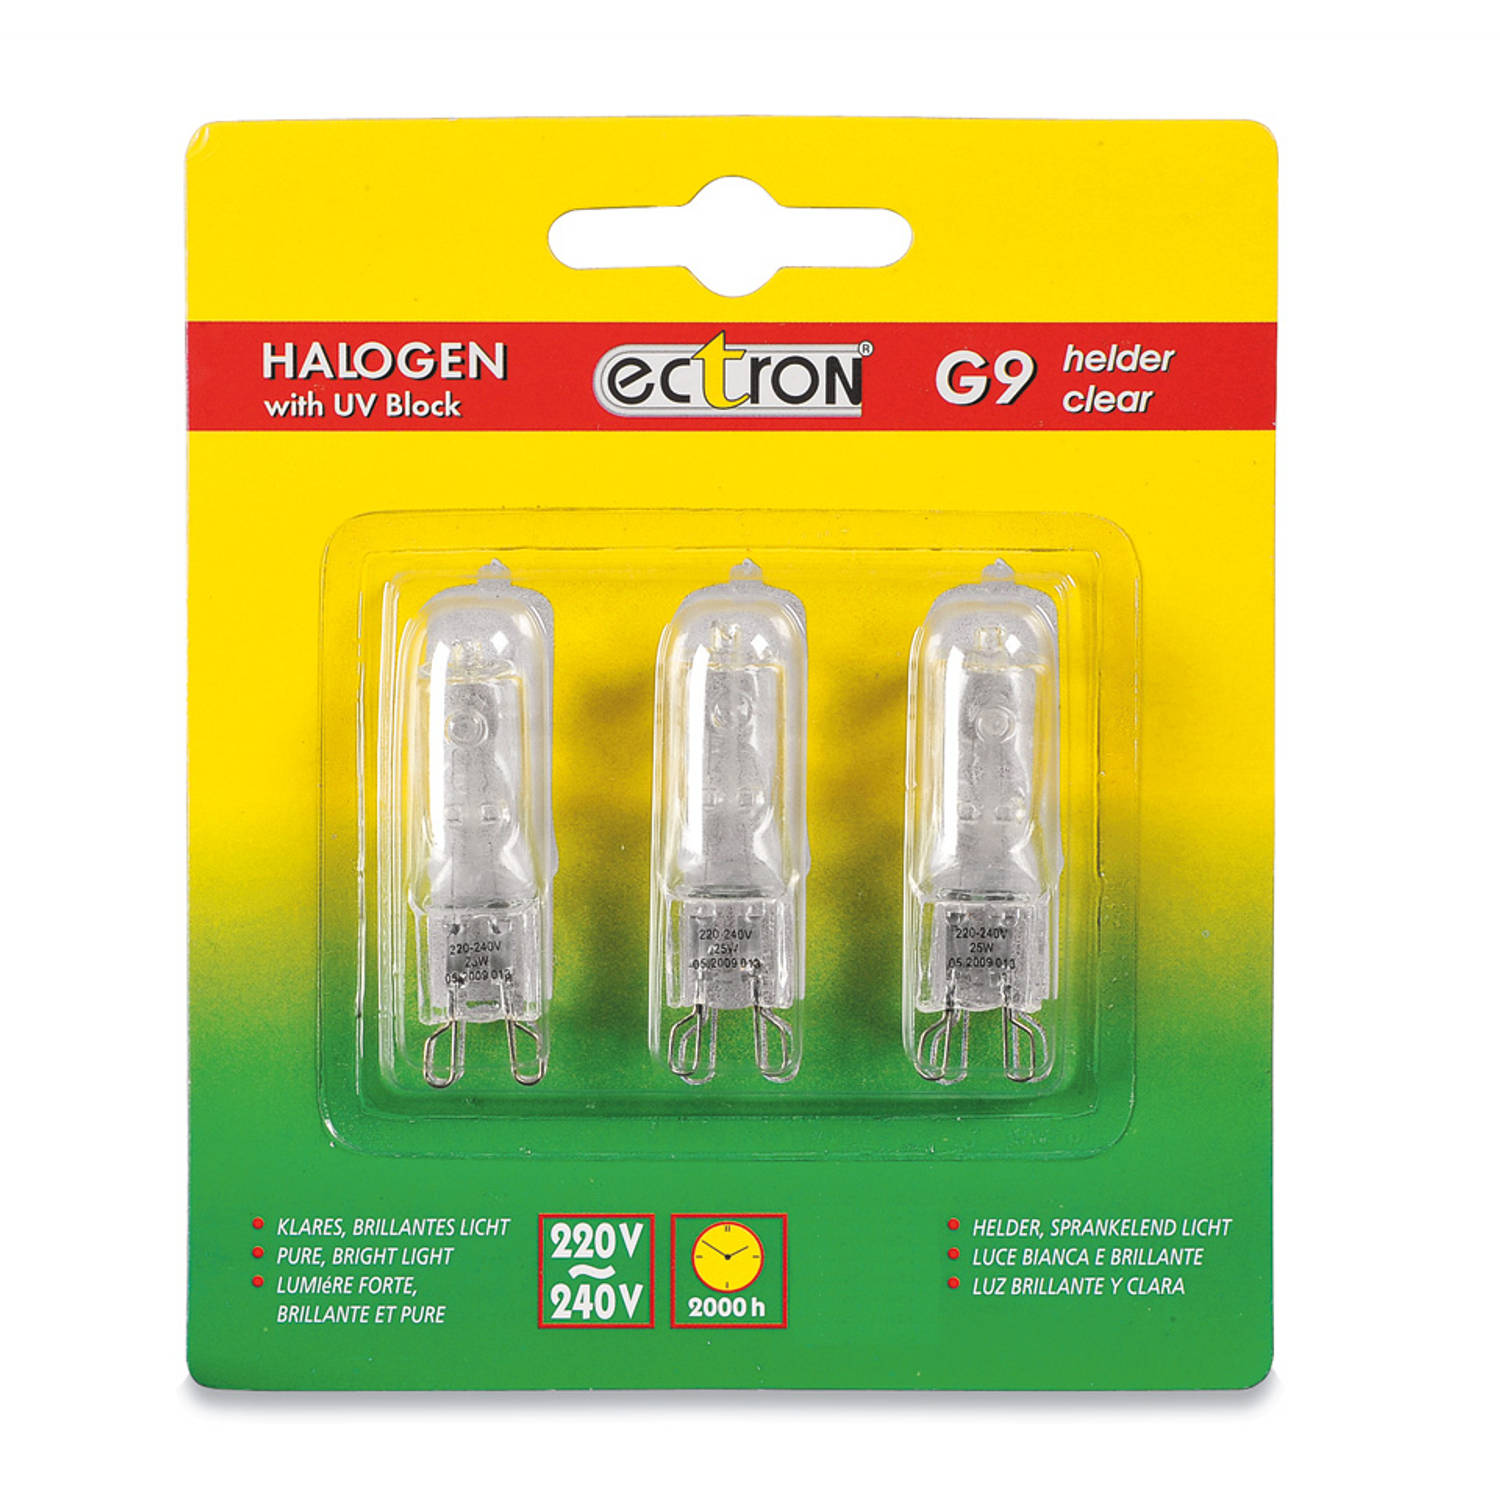 gedragen ontwerper inch Ectron G9 halogeenlamp 28W 3 stuks | Blokker